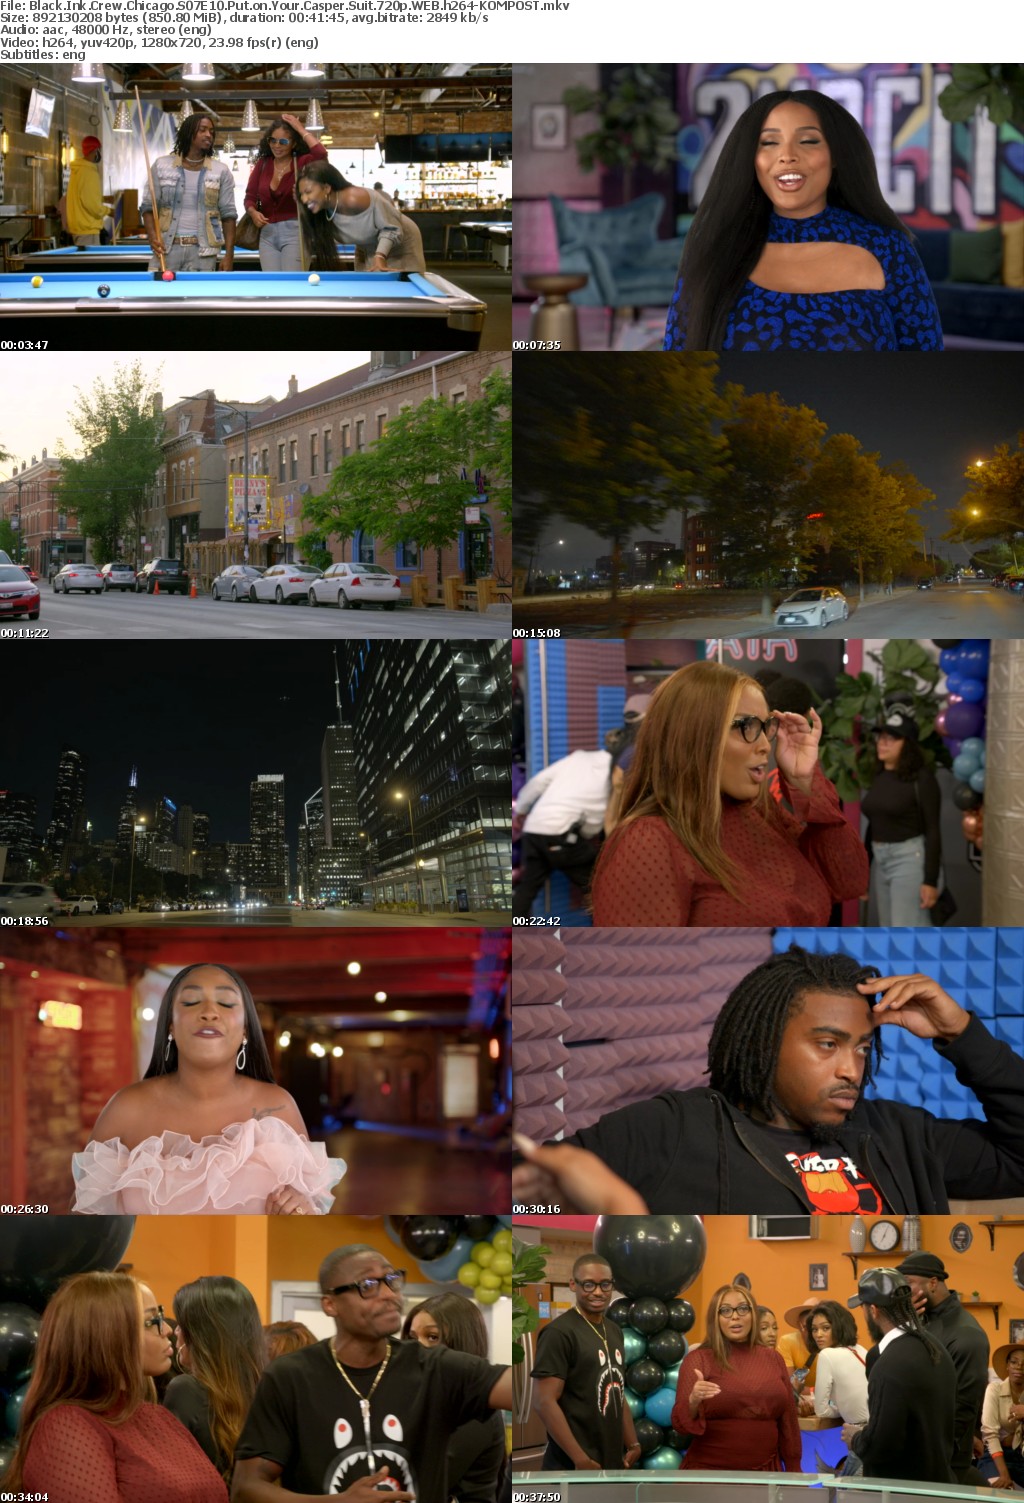 Black Ink Crew Chicago S07E10 Put on Your Casper Suit 720p WEB h264-KOMPOST